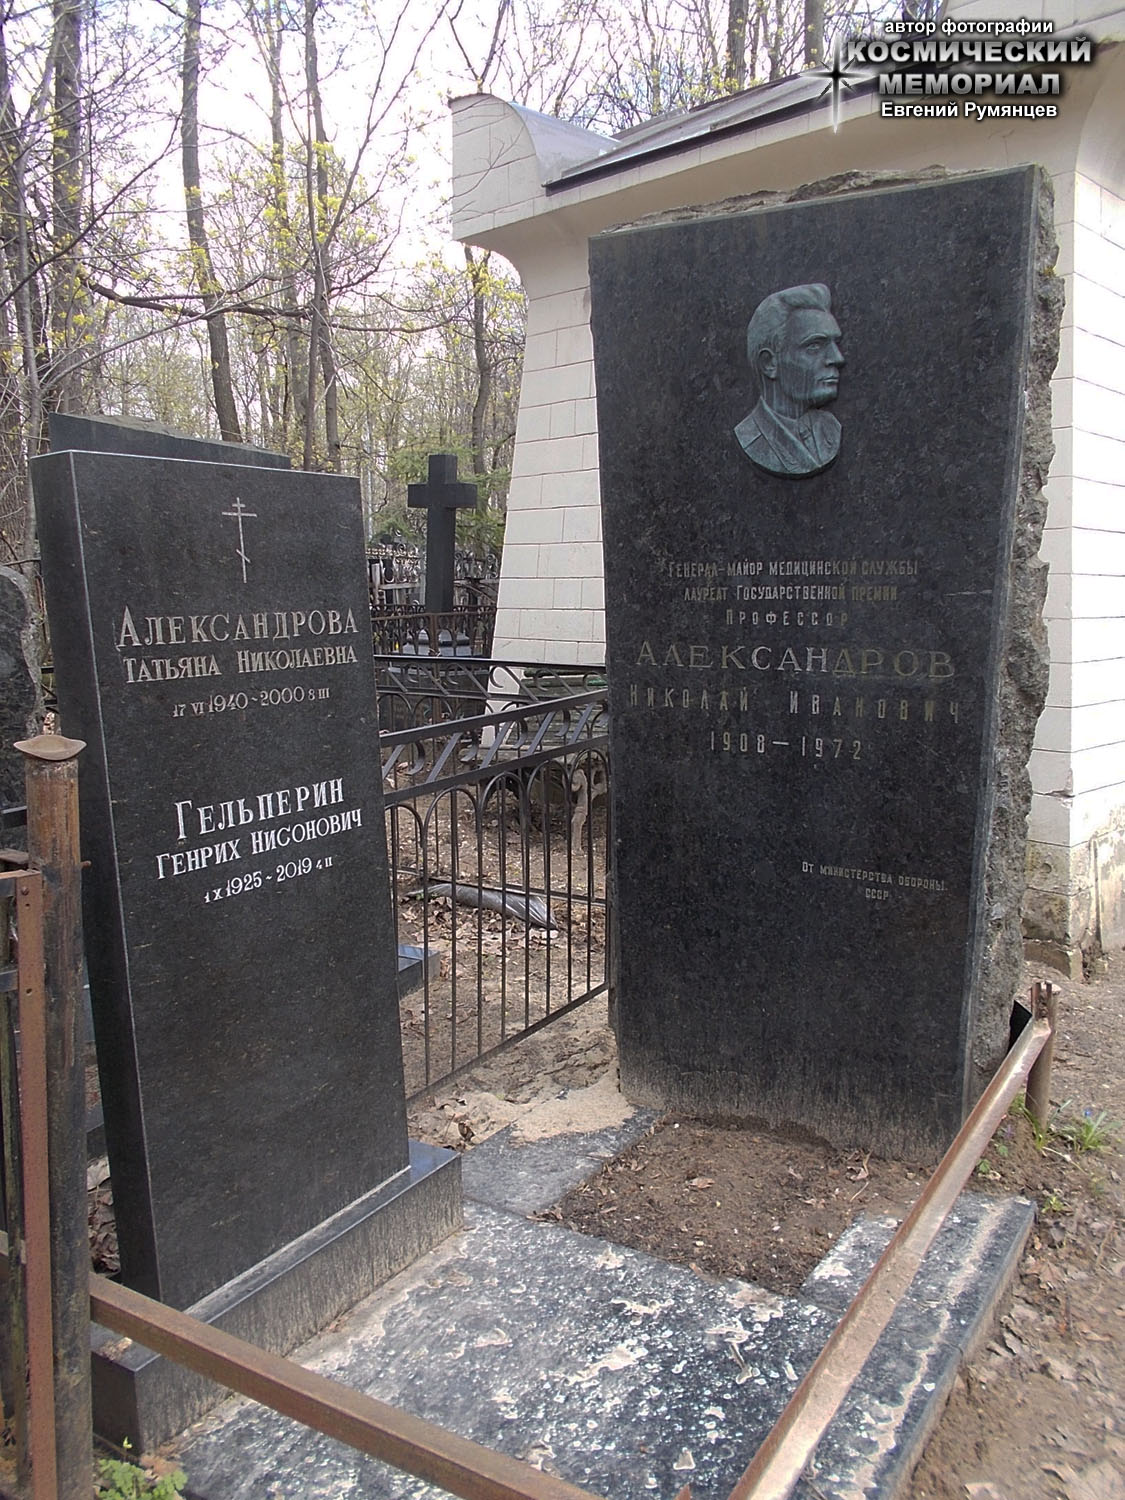 г. Москва, Введенское кладбище (уч. № 10). Надгробие на могилах Г.Н. Гельперина, его супруги и тестя (апрель 2021 года)